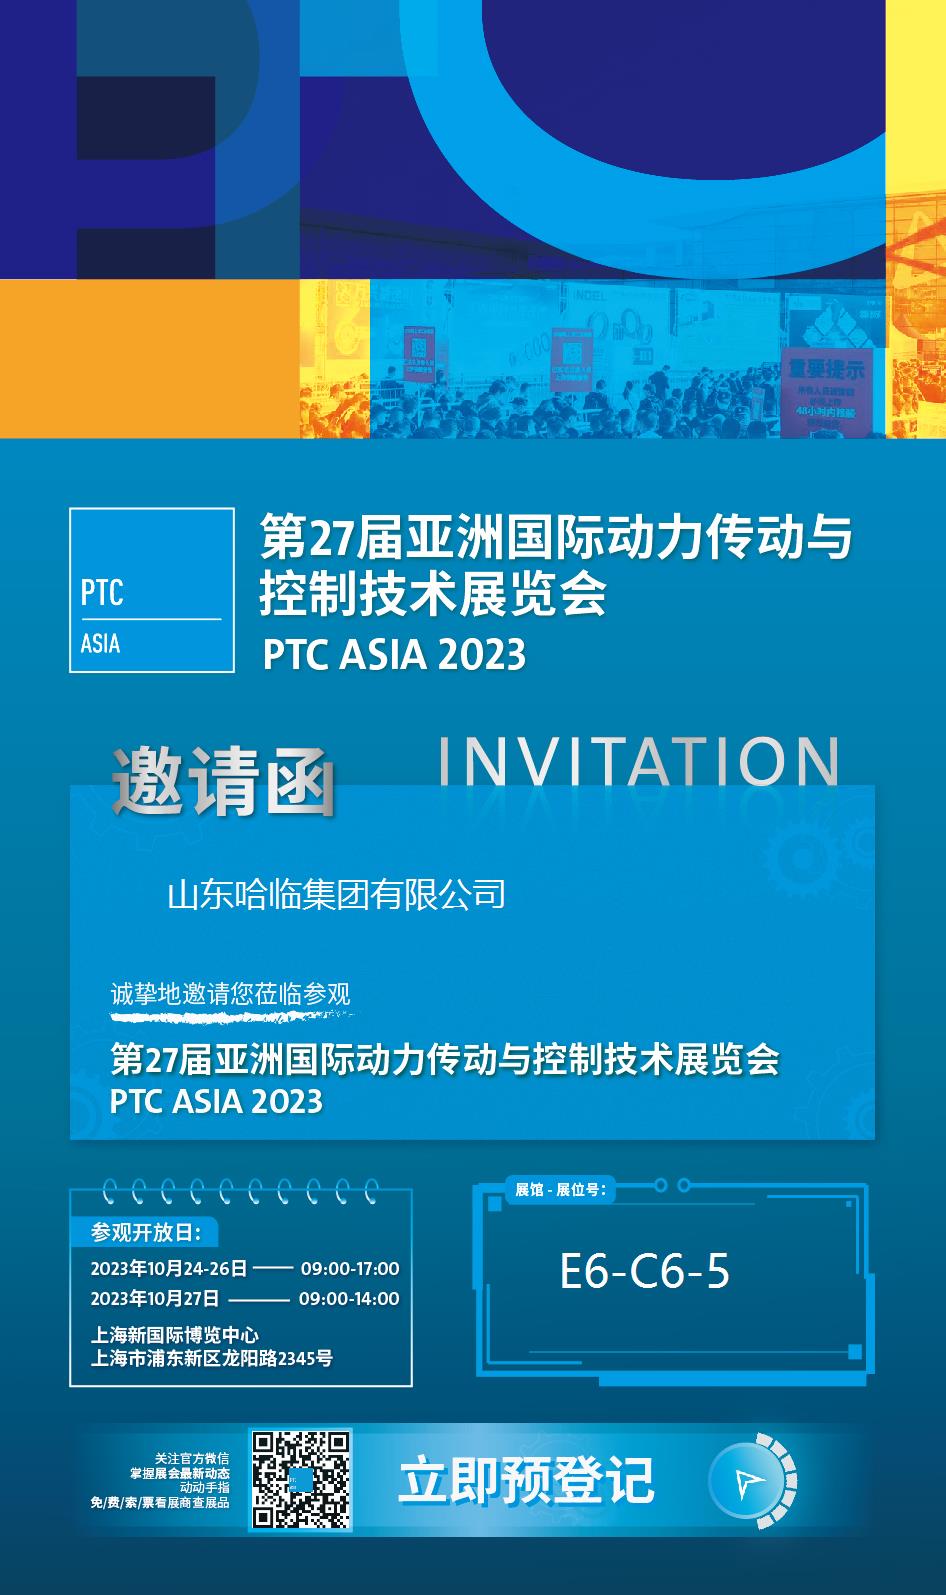 2023 Shanghai PTC ASIA Exhibition Invitation